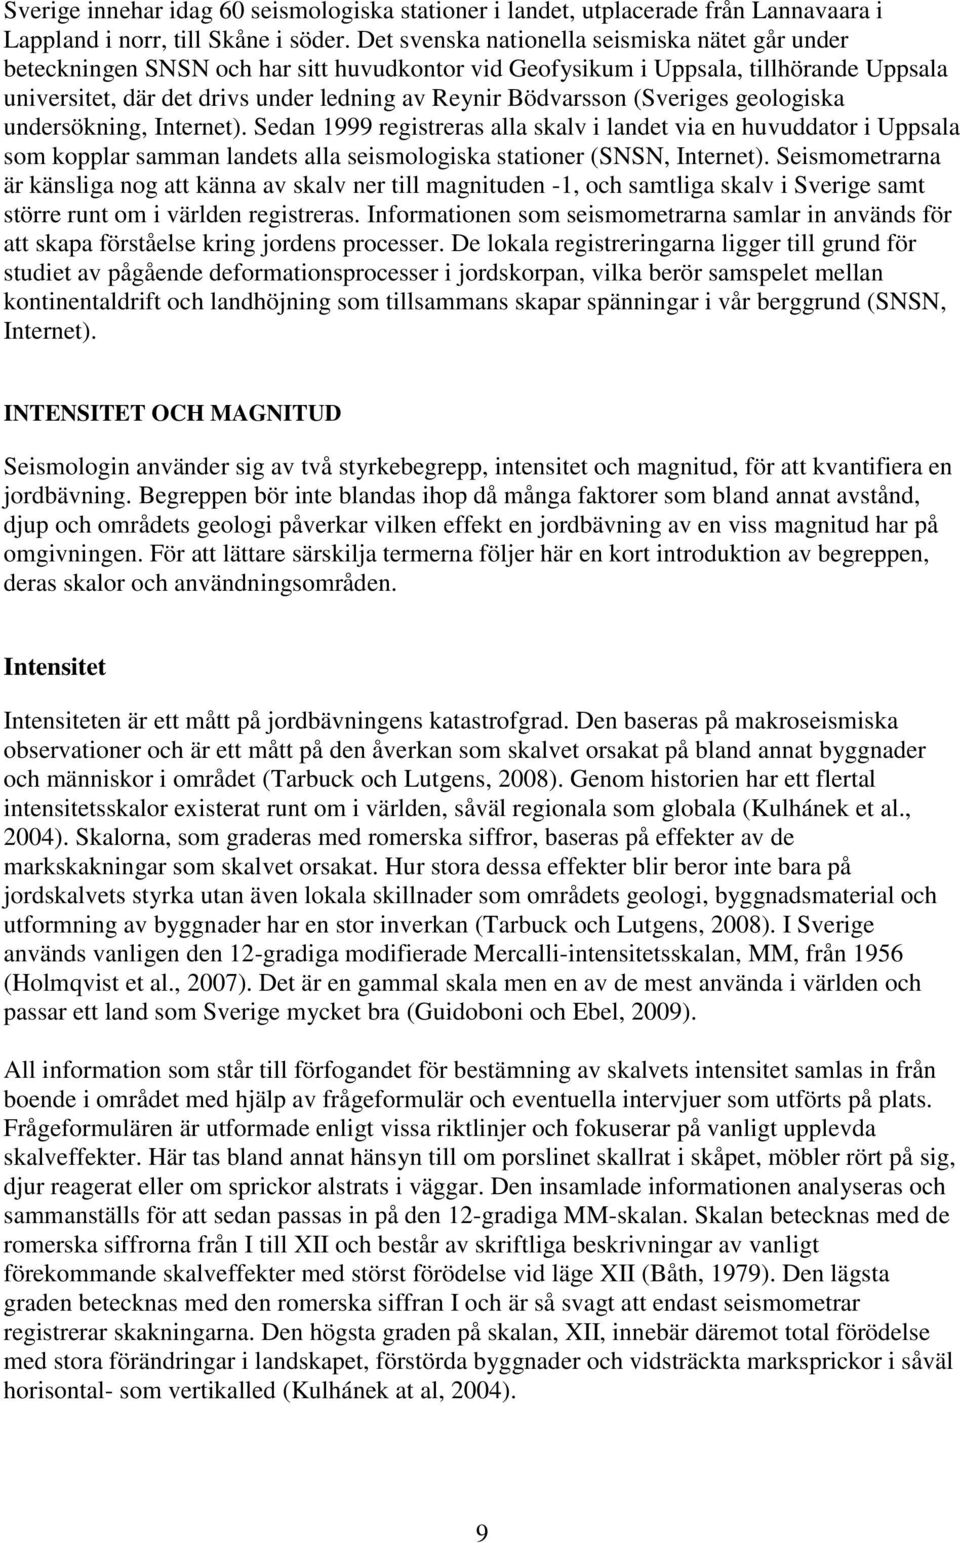 (Sveriges geologiska undersökning, Internet). Sedan 1999 registreras alla skalv i landet via en huvuddator i Uppsala som kopplar samman landets alla seismologiska stationer (SNSN, Internet).